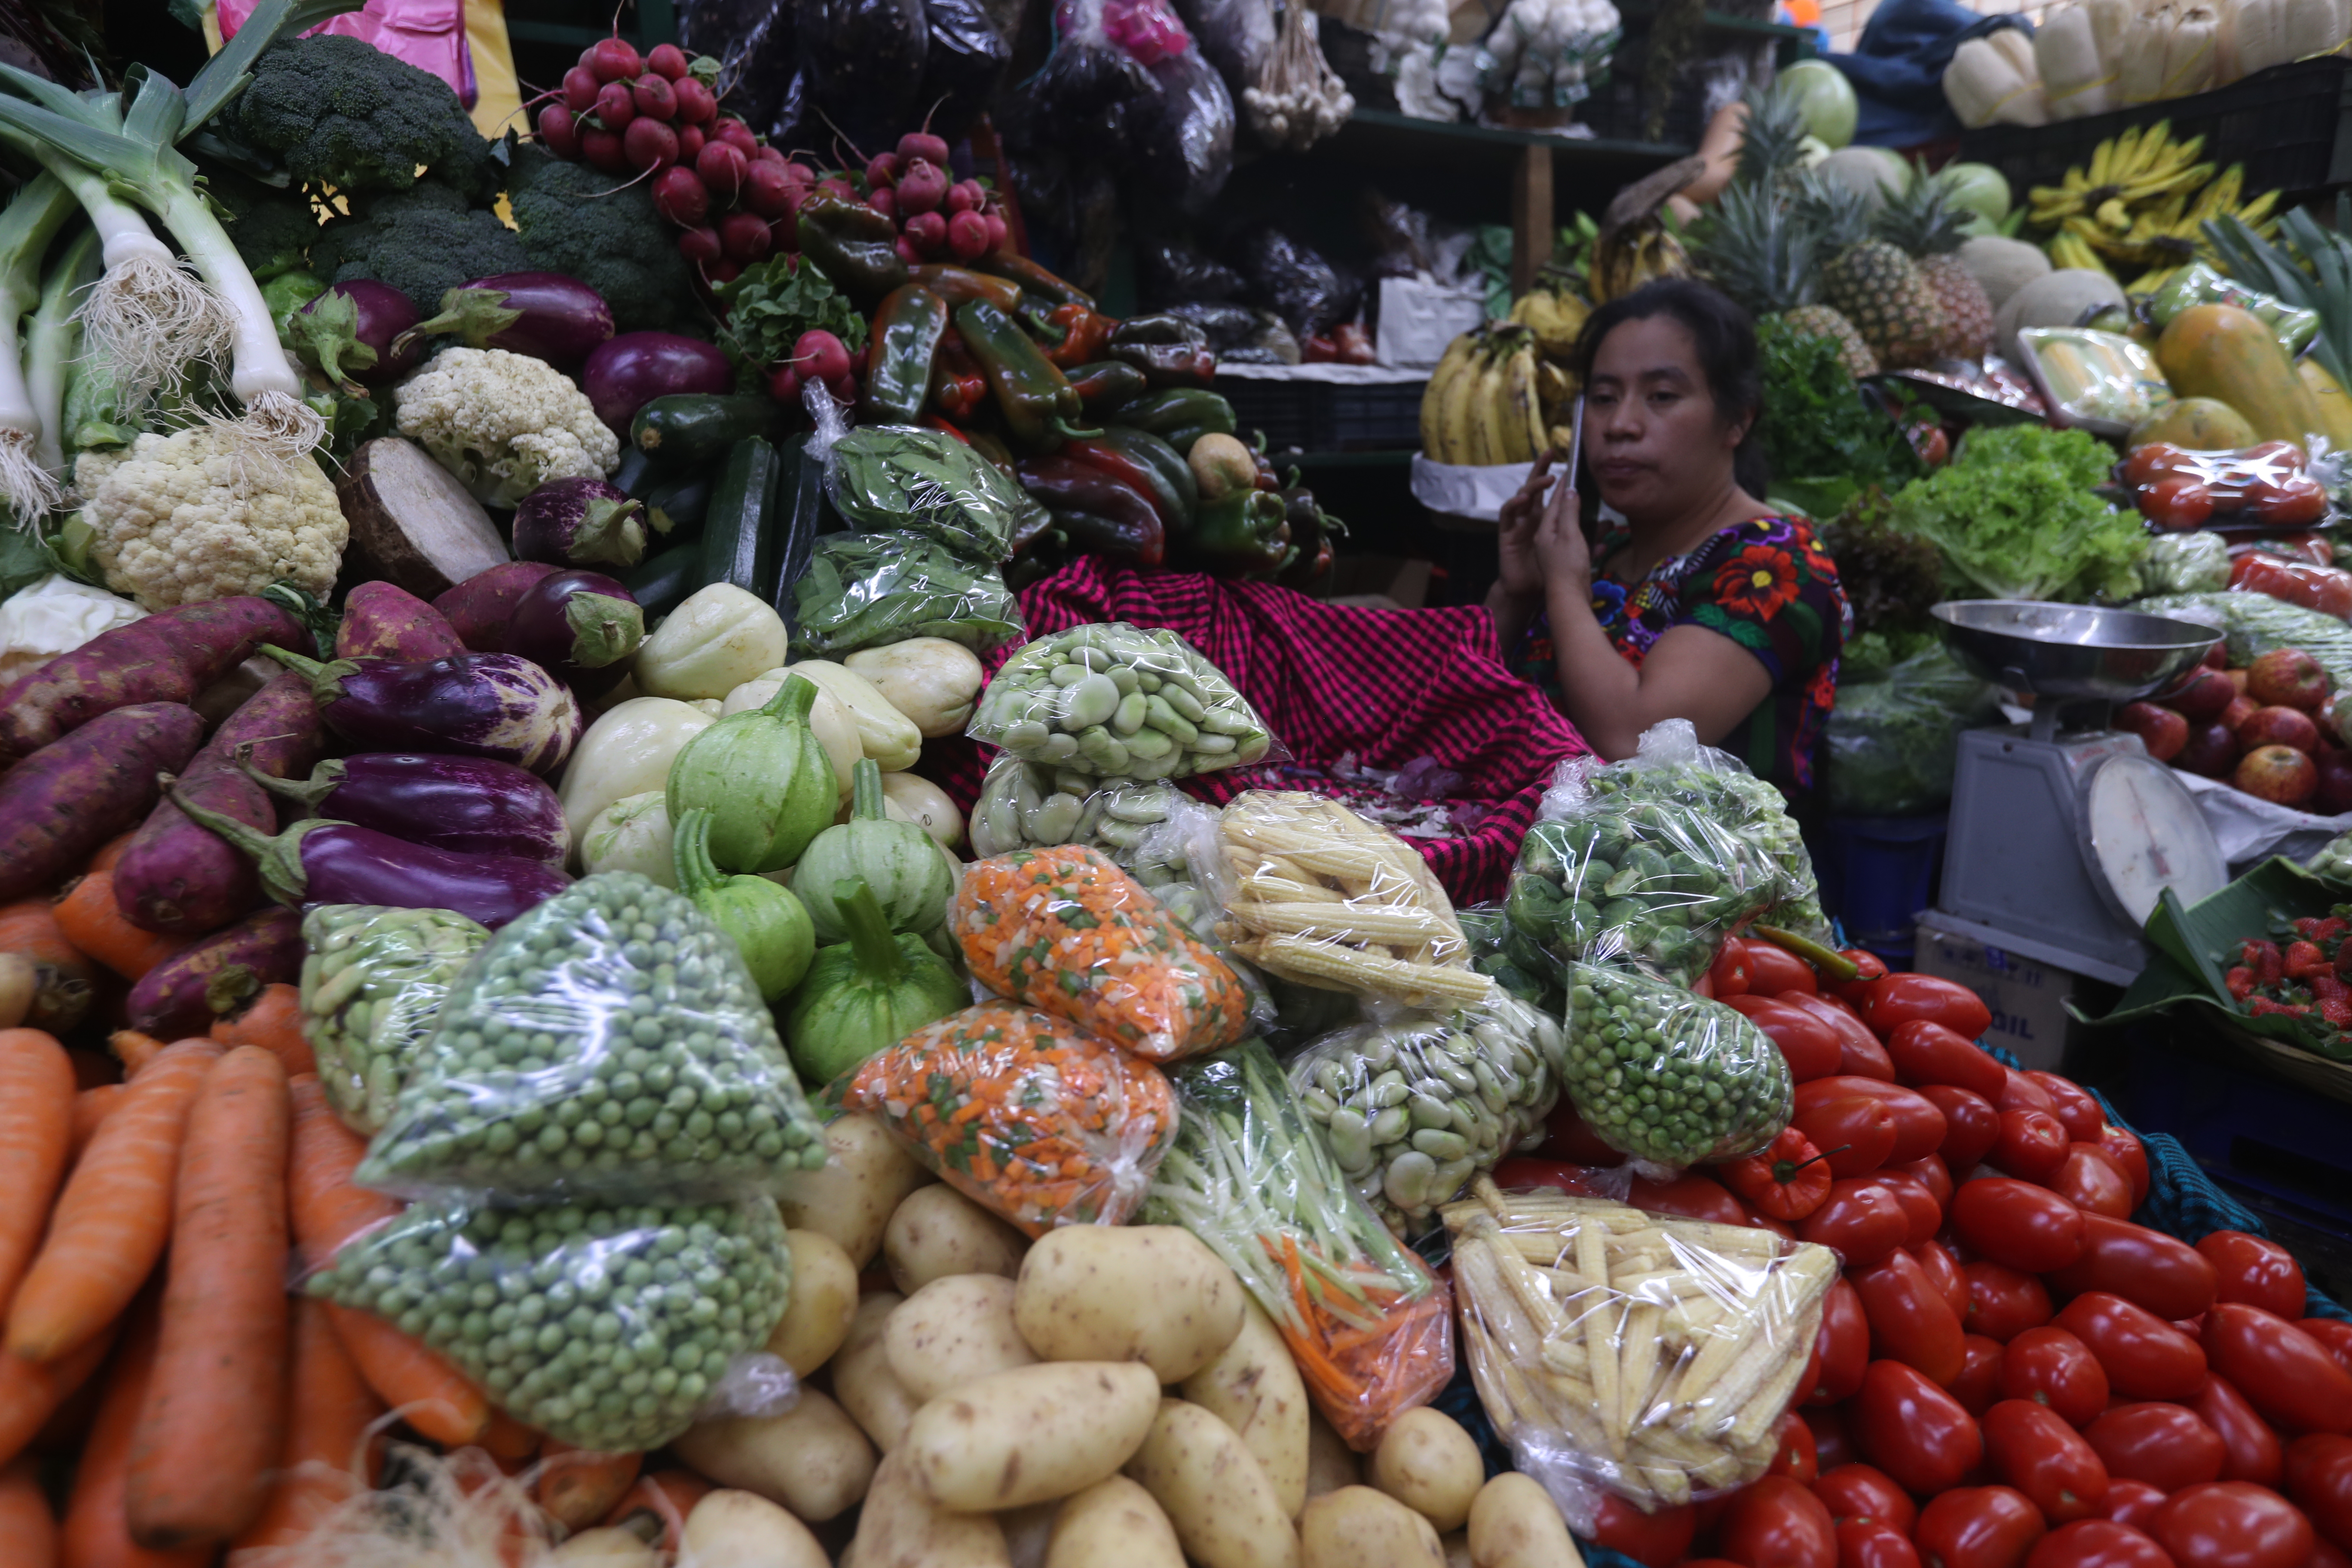 El alza del precio de los insumos agroquímicos, el aumento del costo de la mano de obra y el aumento en los combustibles han incidido inciden en el encarecimiento de los vegetales, las frutas y legumbres. (Foto Prensa Libre: Hemeroteca PL).